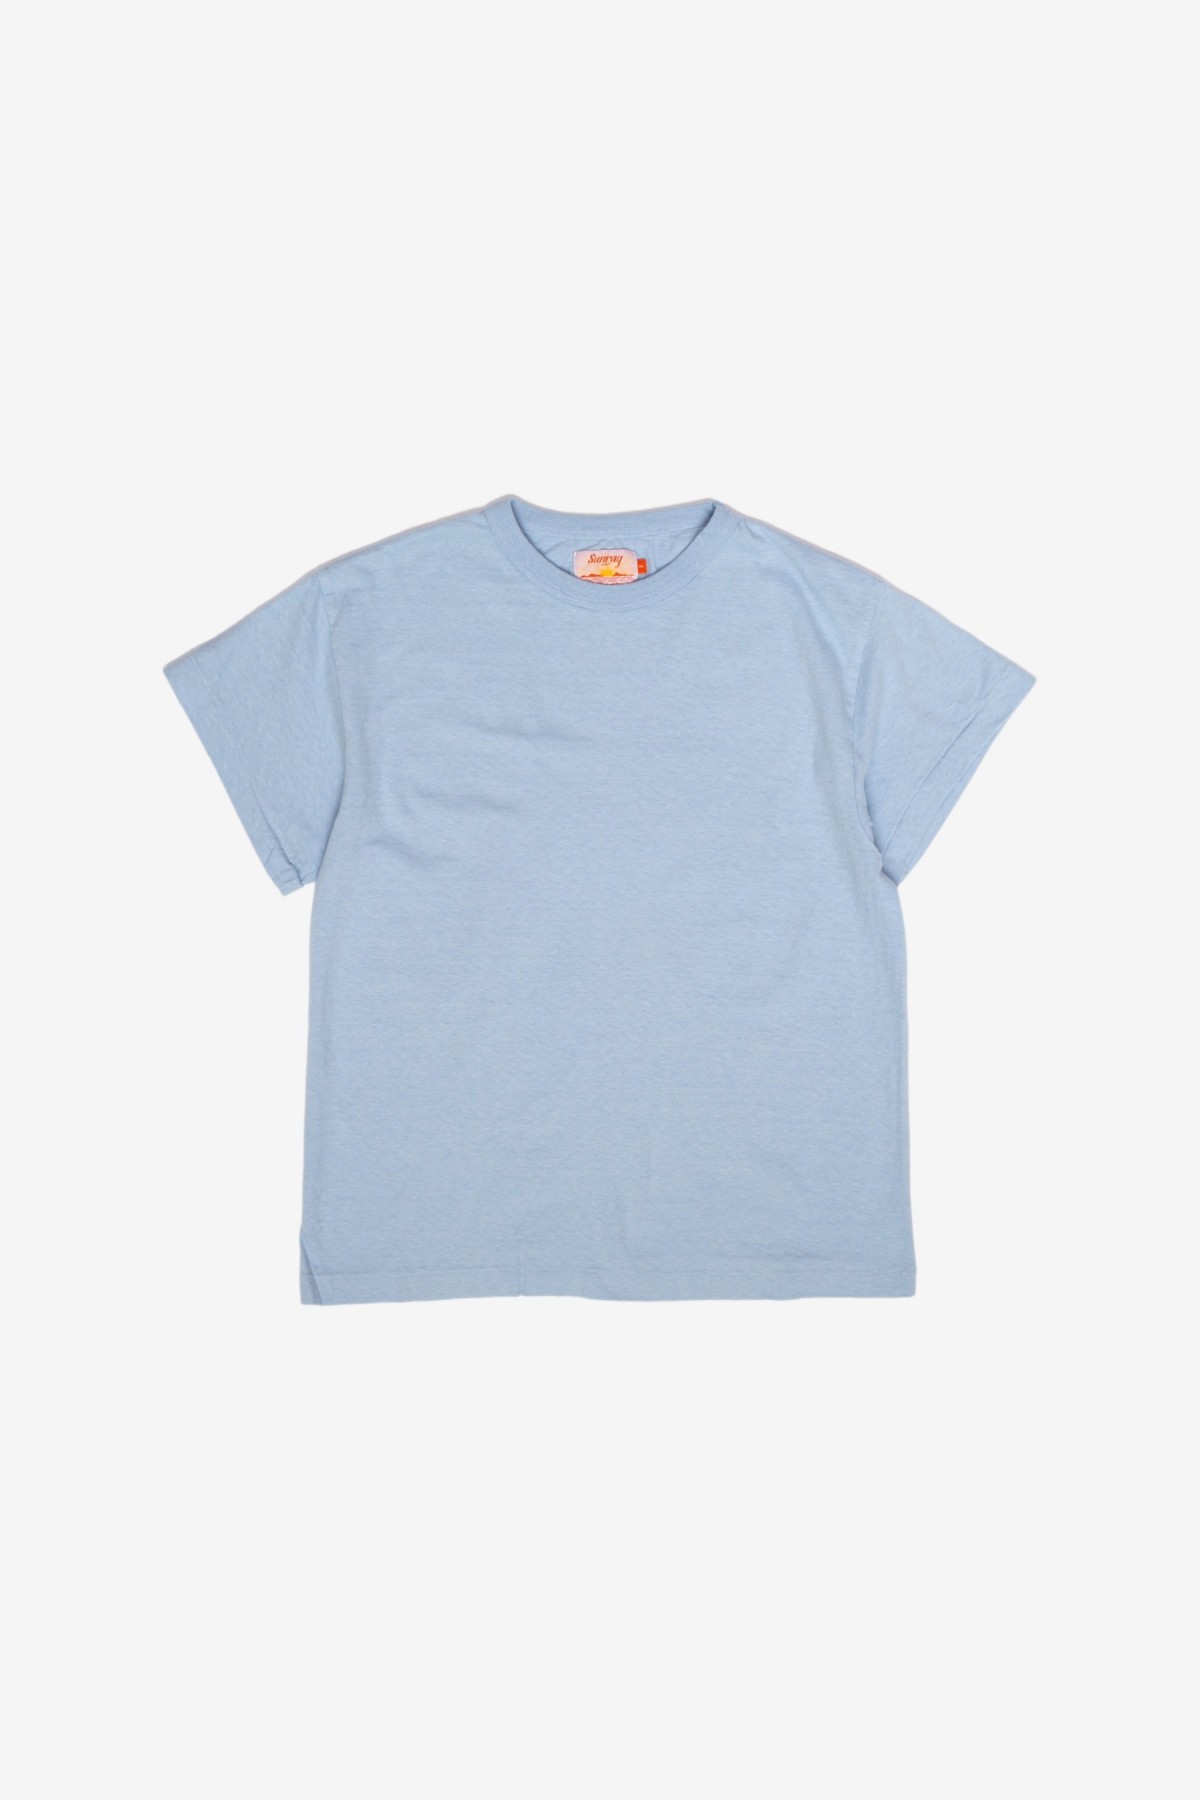 Sunray Sportswear Na'Maka'Oh Short Sleeve T-Shirt in Duck Egg